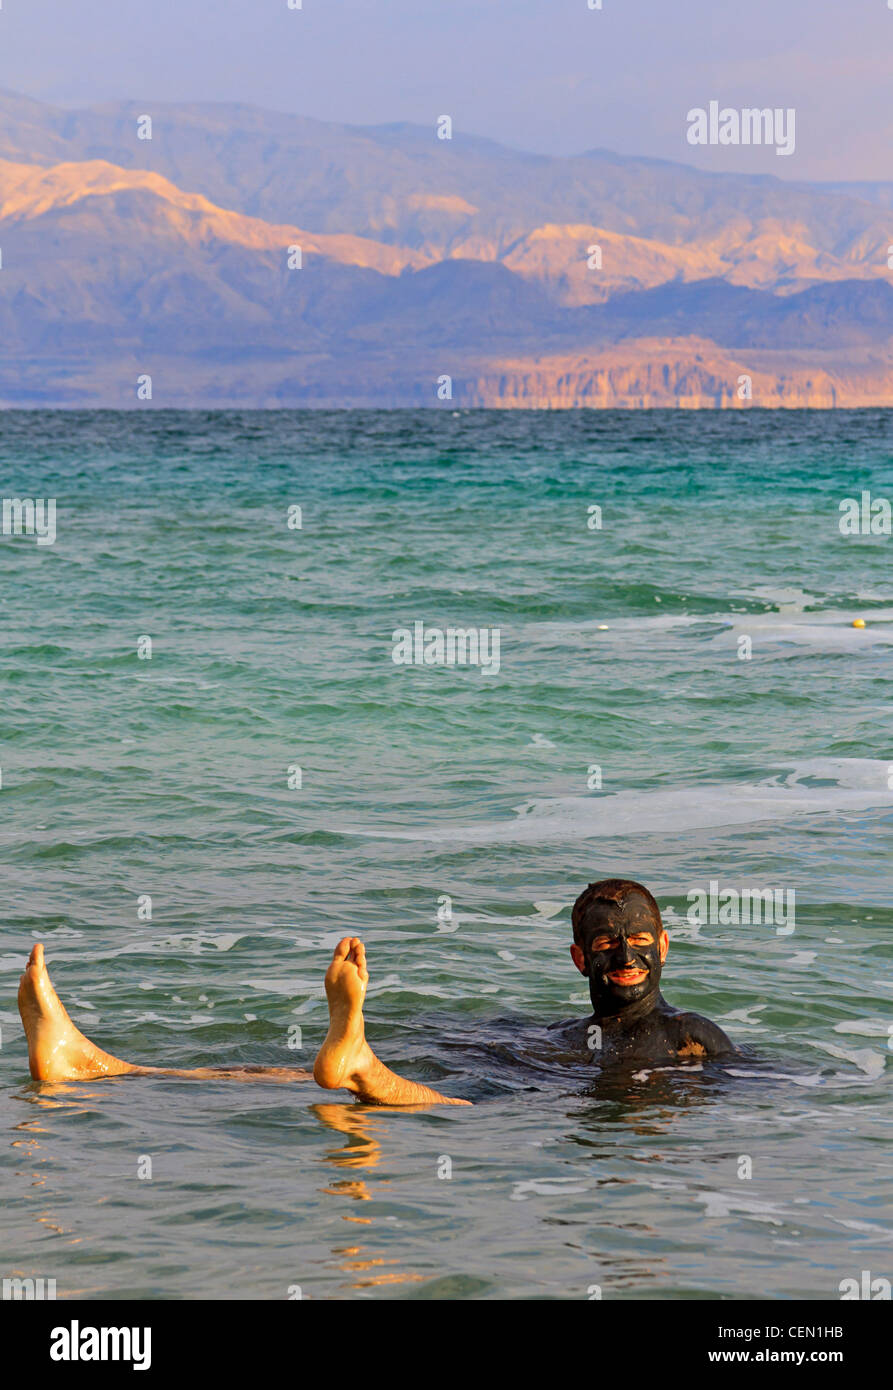 Bather flotte dans les eaux salées de super la Mer Morte en Israël après avoir couvert lui-même avec la boue riche en minéraux. Banque D'Images